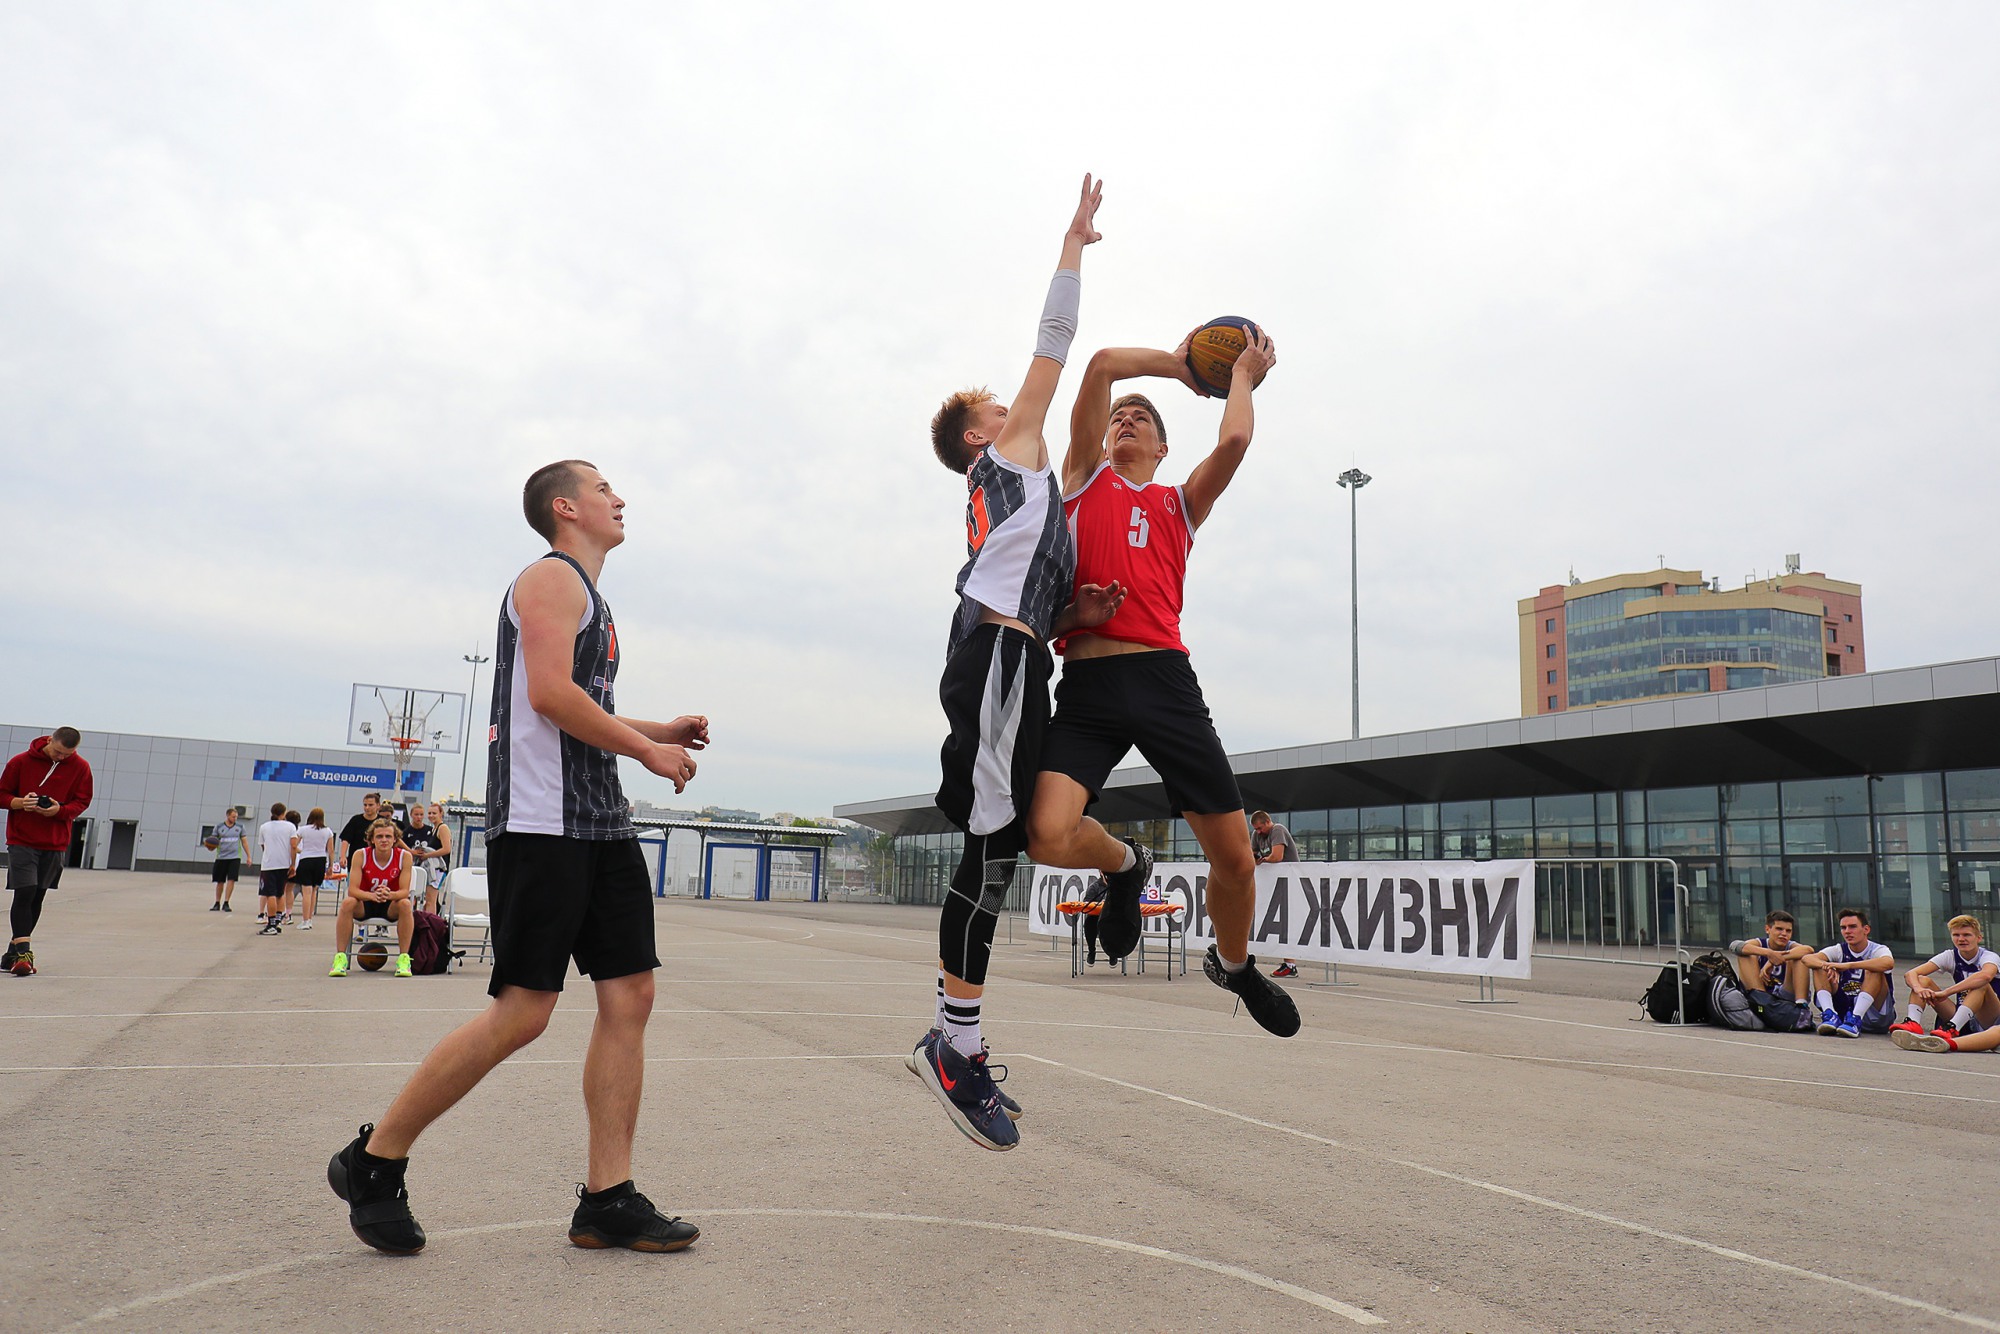 Команда Павла Сильнова пробилась в четвёрку на соревнованиях по стритболу в Нижнем Новгороде